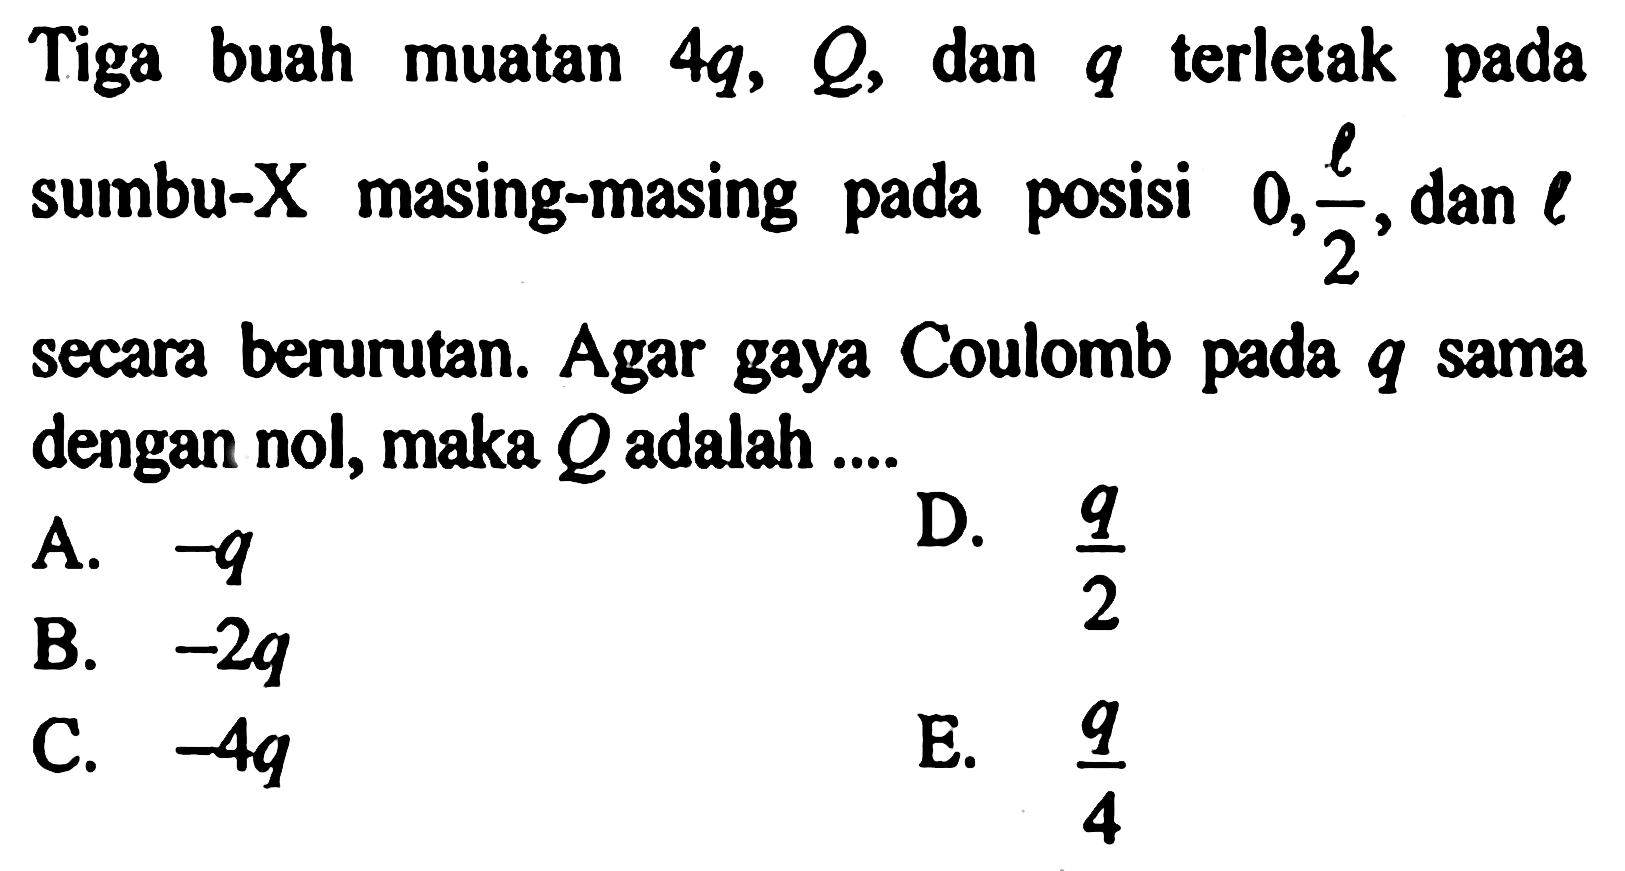 Tiga buah muatan 4q, Q dan q terletak sumbu-X masing-masing 0, l/2 dan l secara berurutan. Agar gaya Coulomb pada q sama dengan nol, maka Q adalah ...